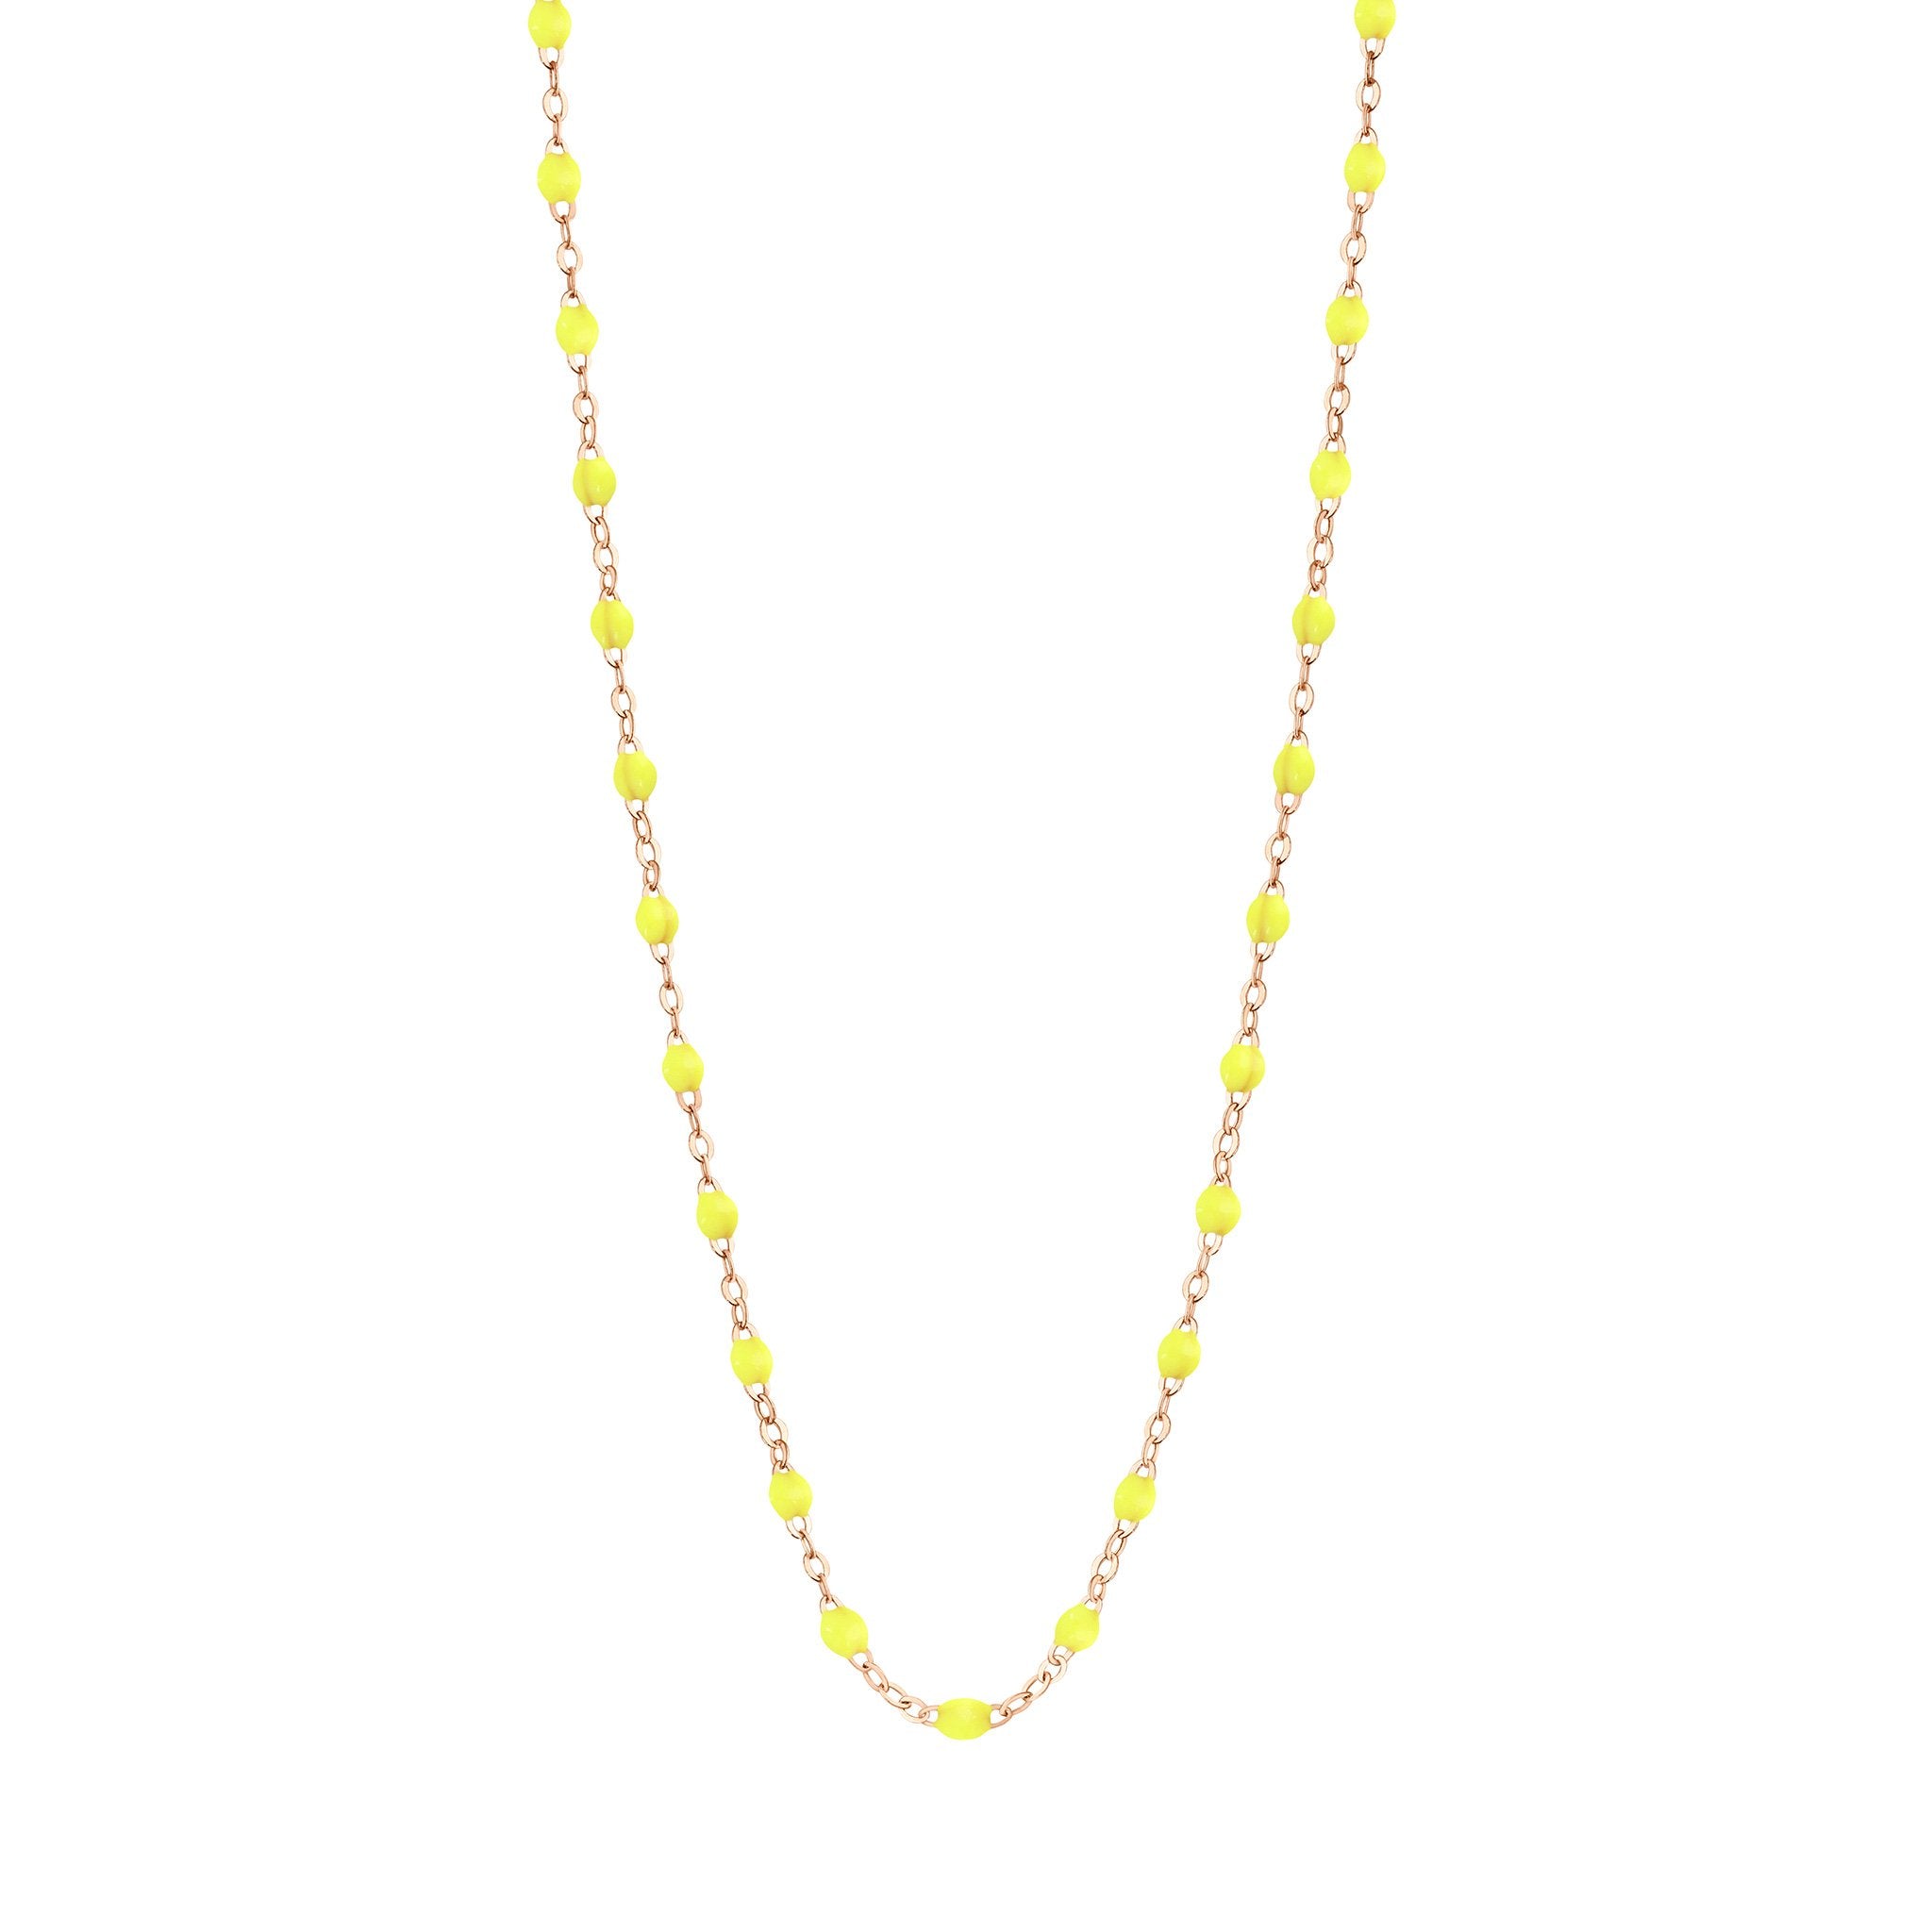 Collier jaune fluo Classique Gigi, or rose, 50 cm classique gigi Référence :  b1gi001r1850xx -1